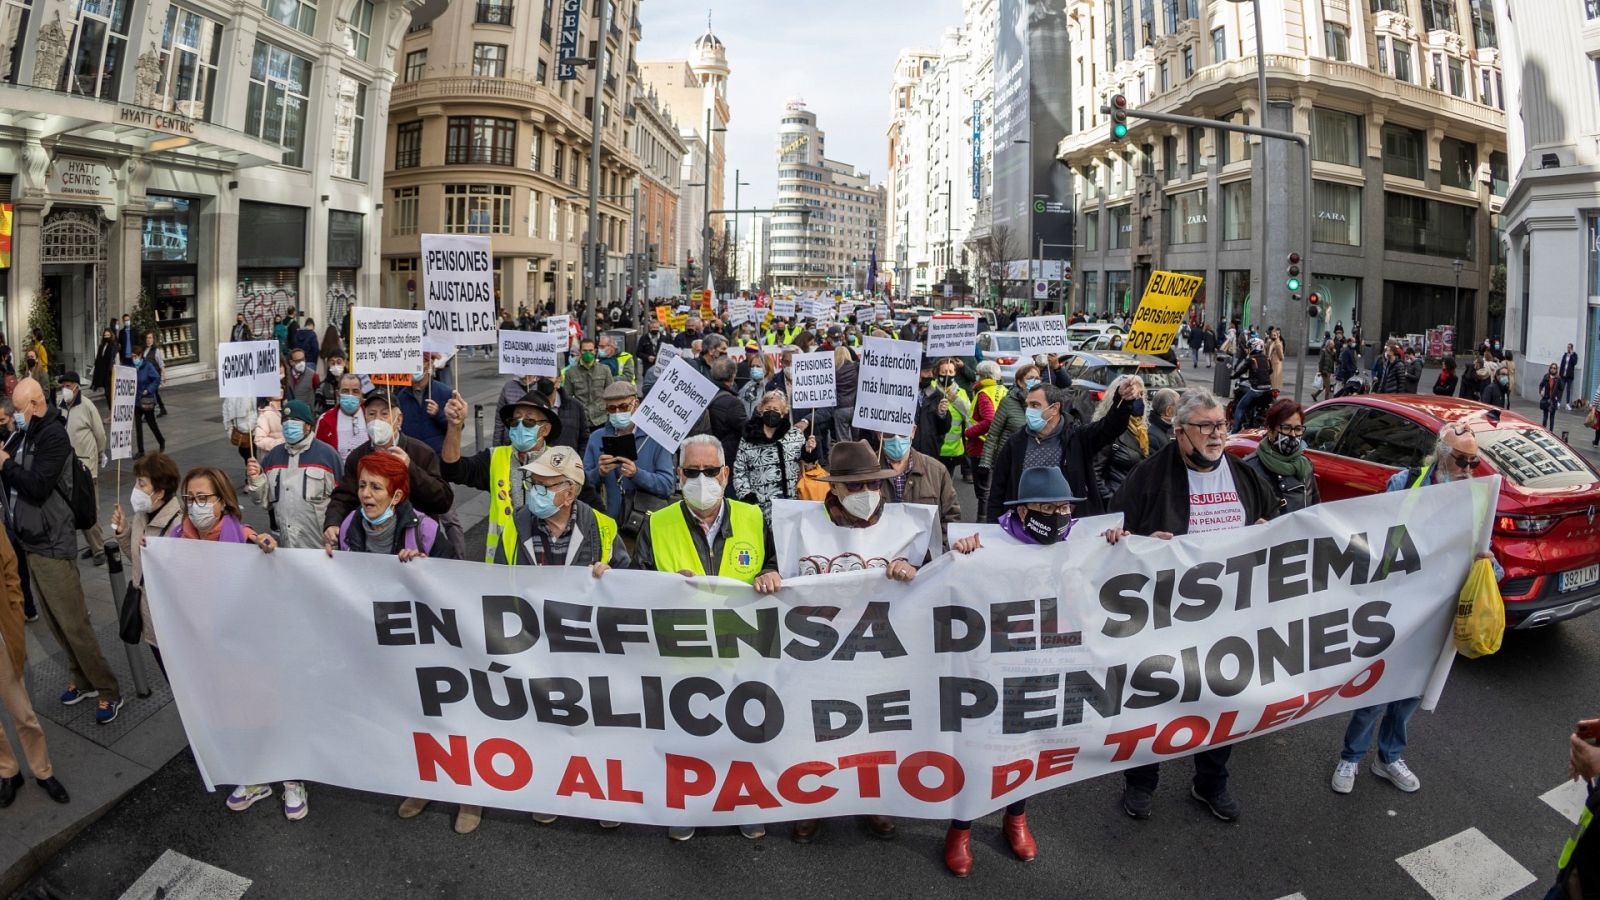 Pensionistas de toda España vuelven a salir a las calles para reclamar pensiones dignas